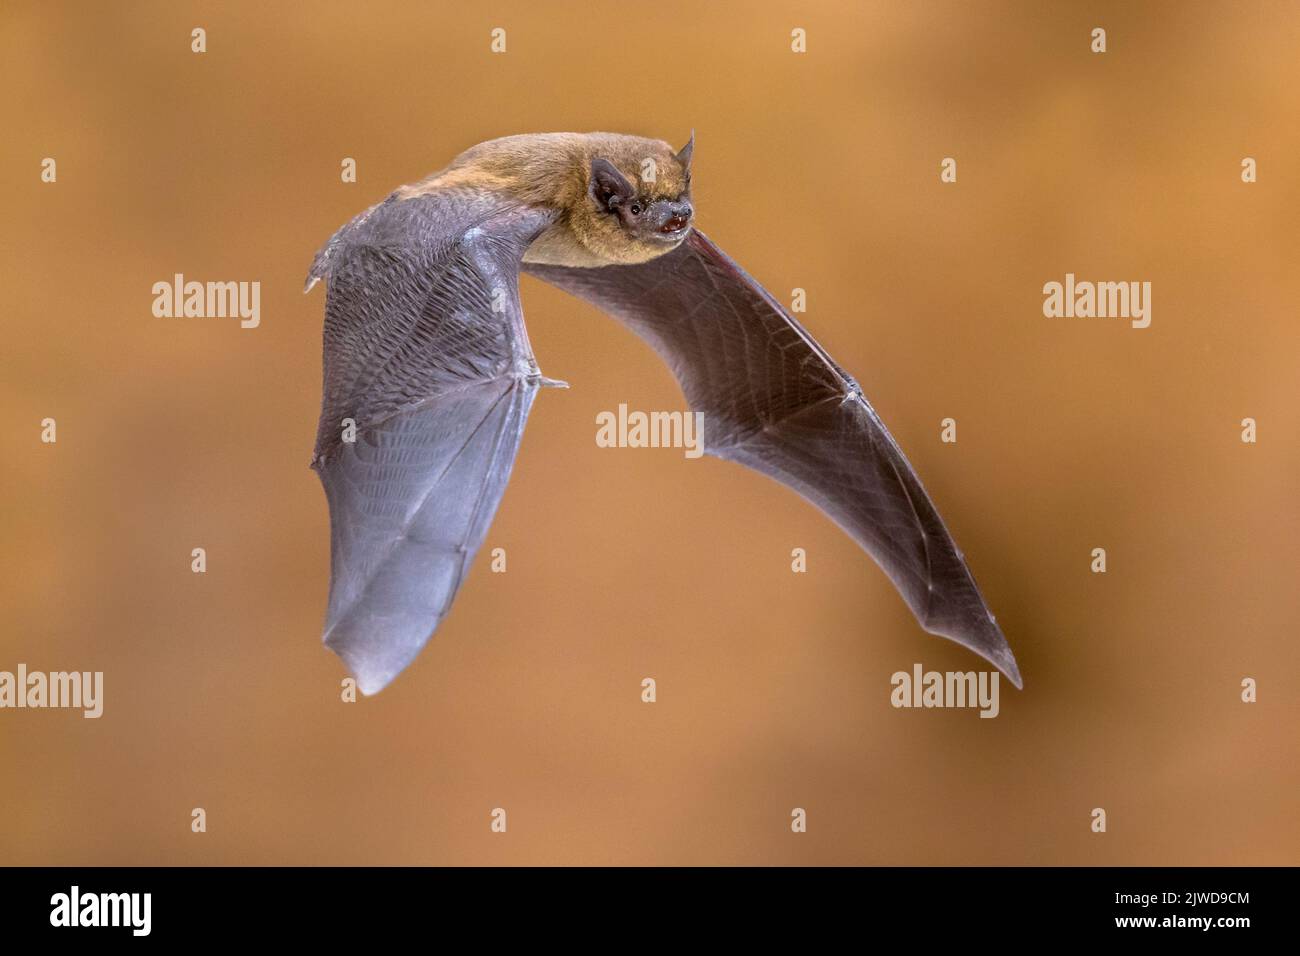 Tir d'action de la chauve-souris de pipistrelle volante (Pipistrellus pipistrellus) vu de côté sur le grenier de la maison en bois avec un fond lumineux Banque D'Images